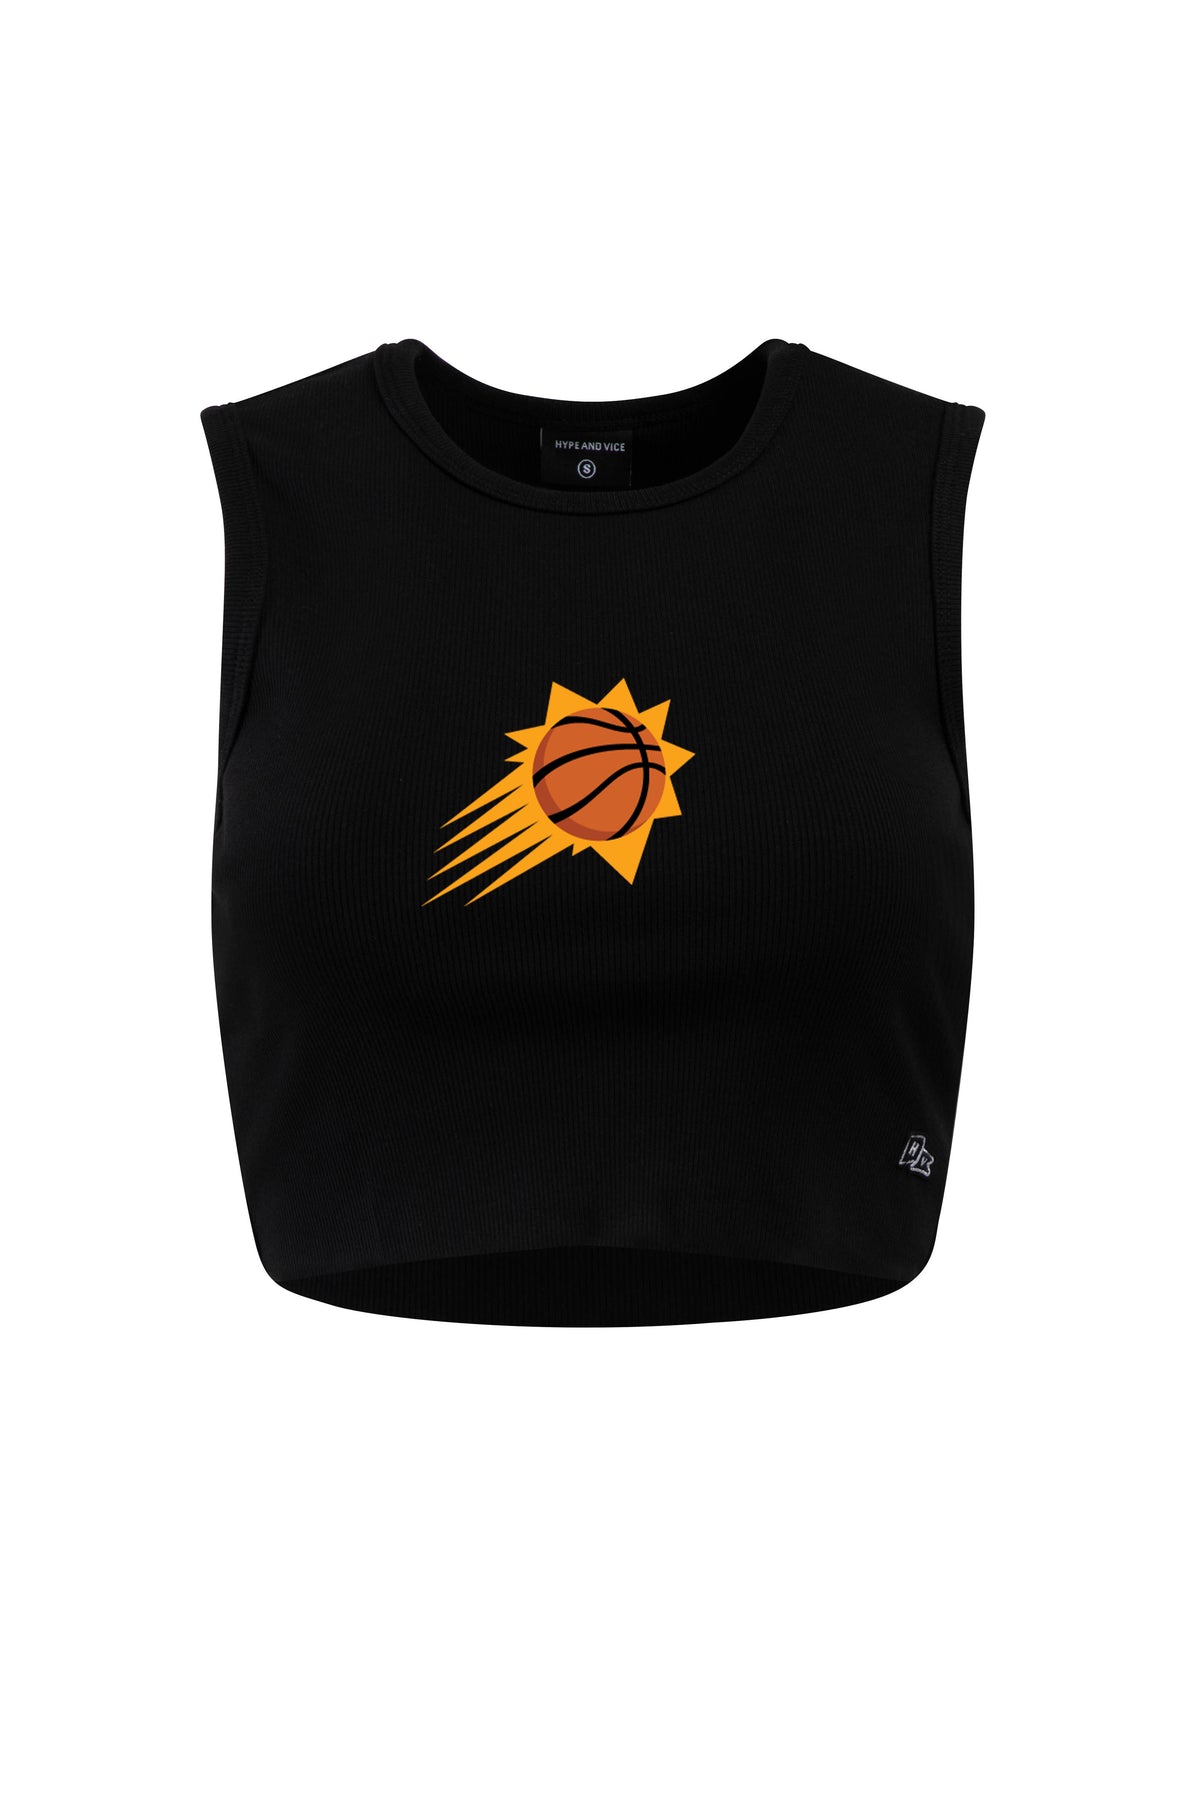 Phoenix Suns Cut Off Tank